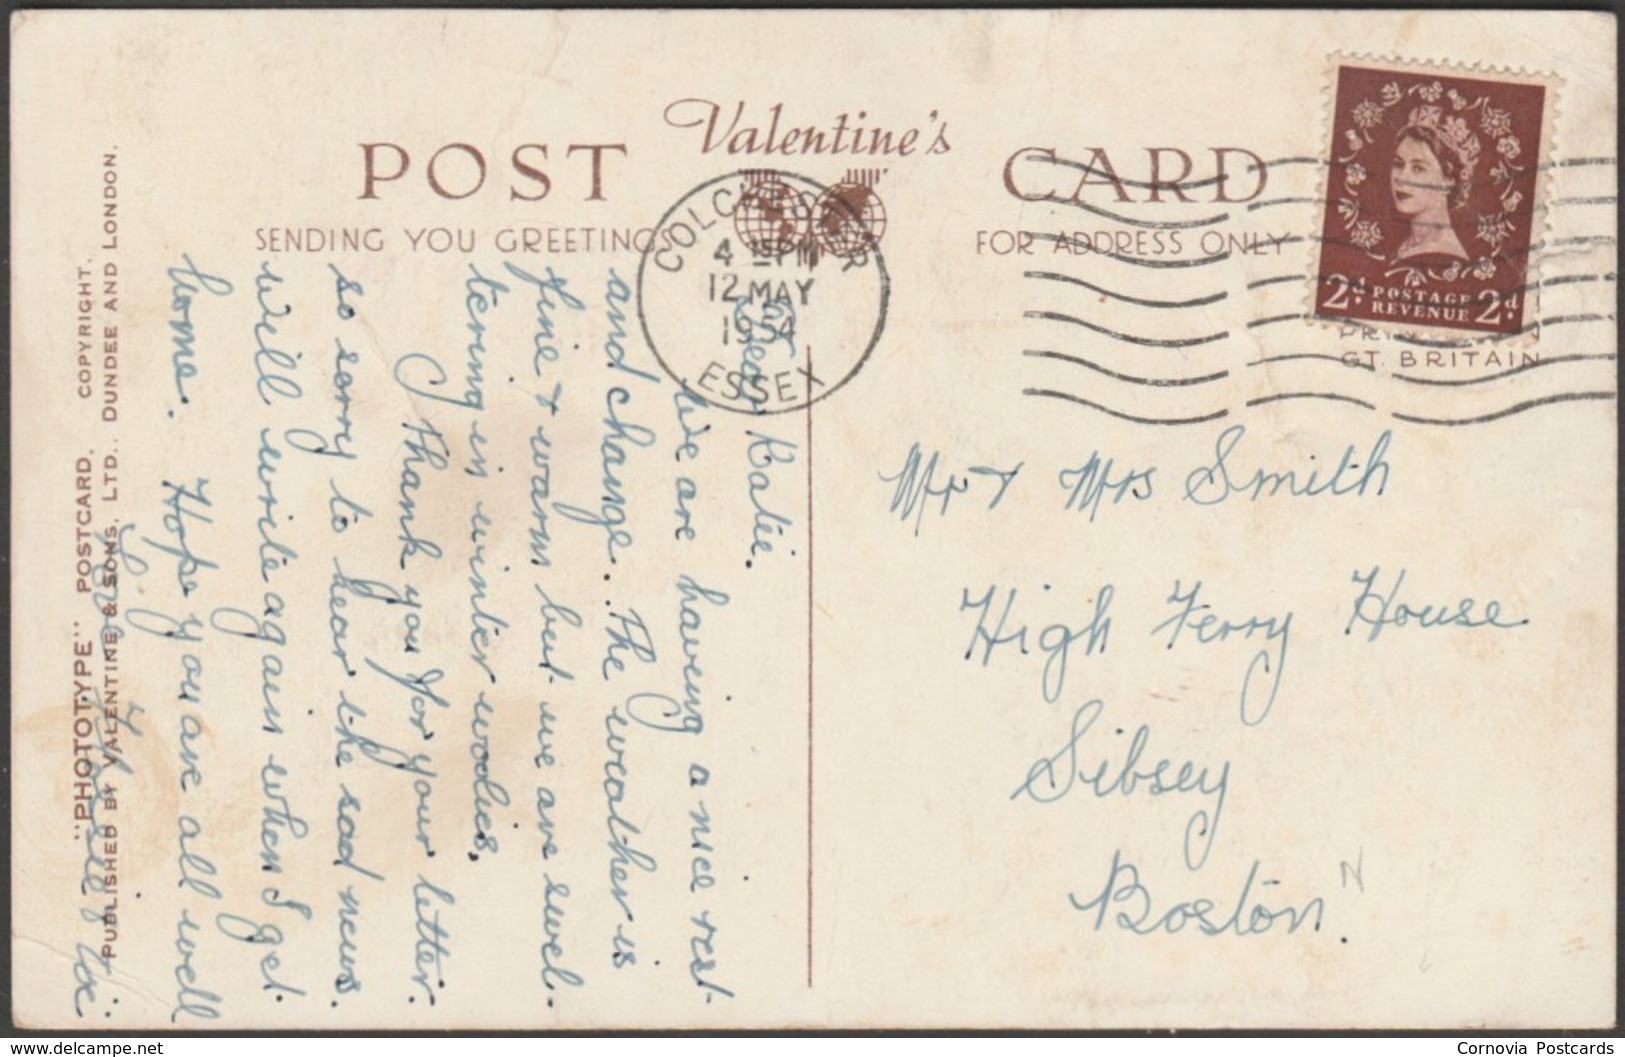 High Street, Colchester, Essex, 1954 - Valentine's Postcard - Colchester